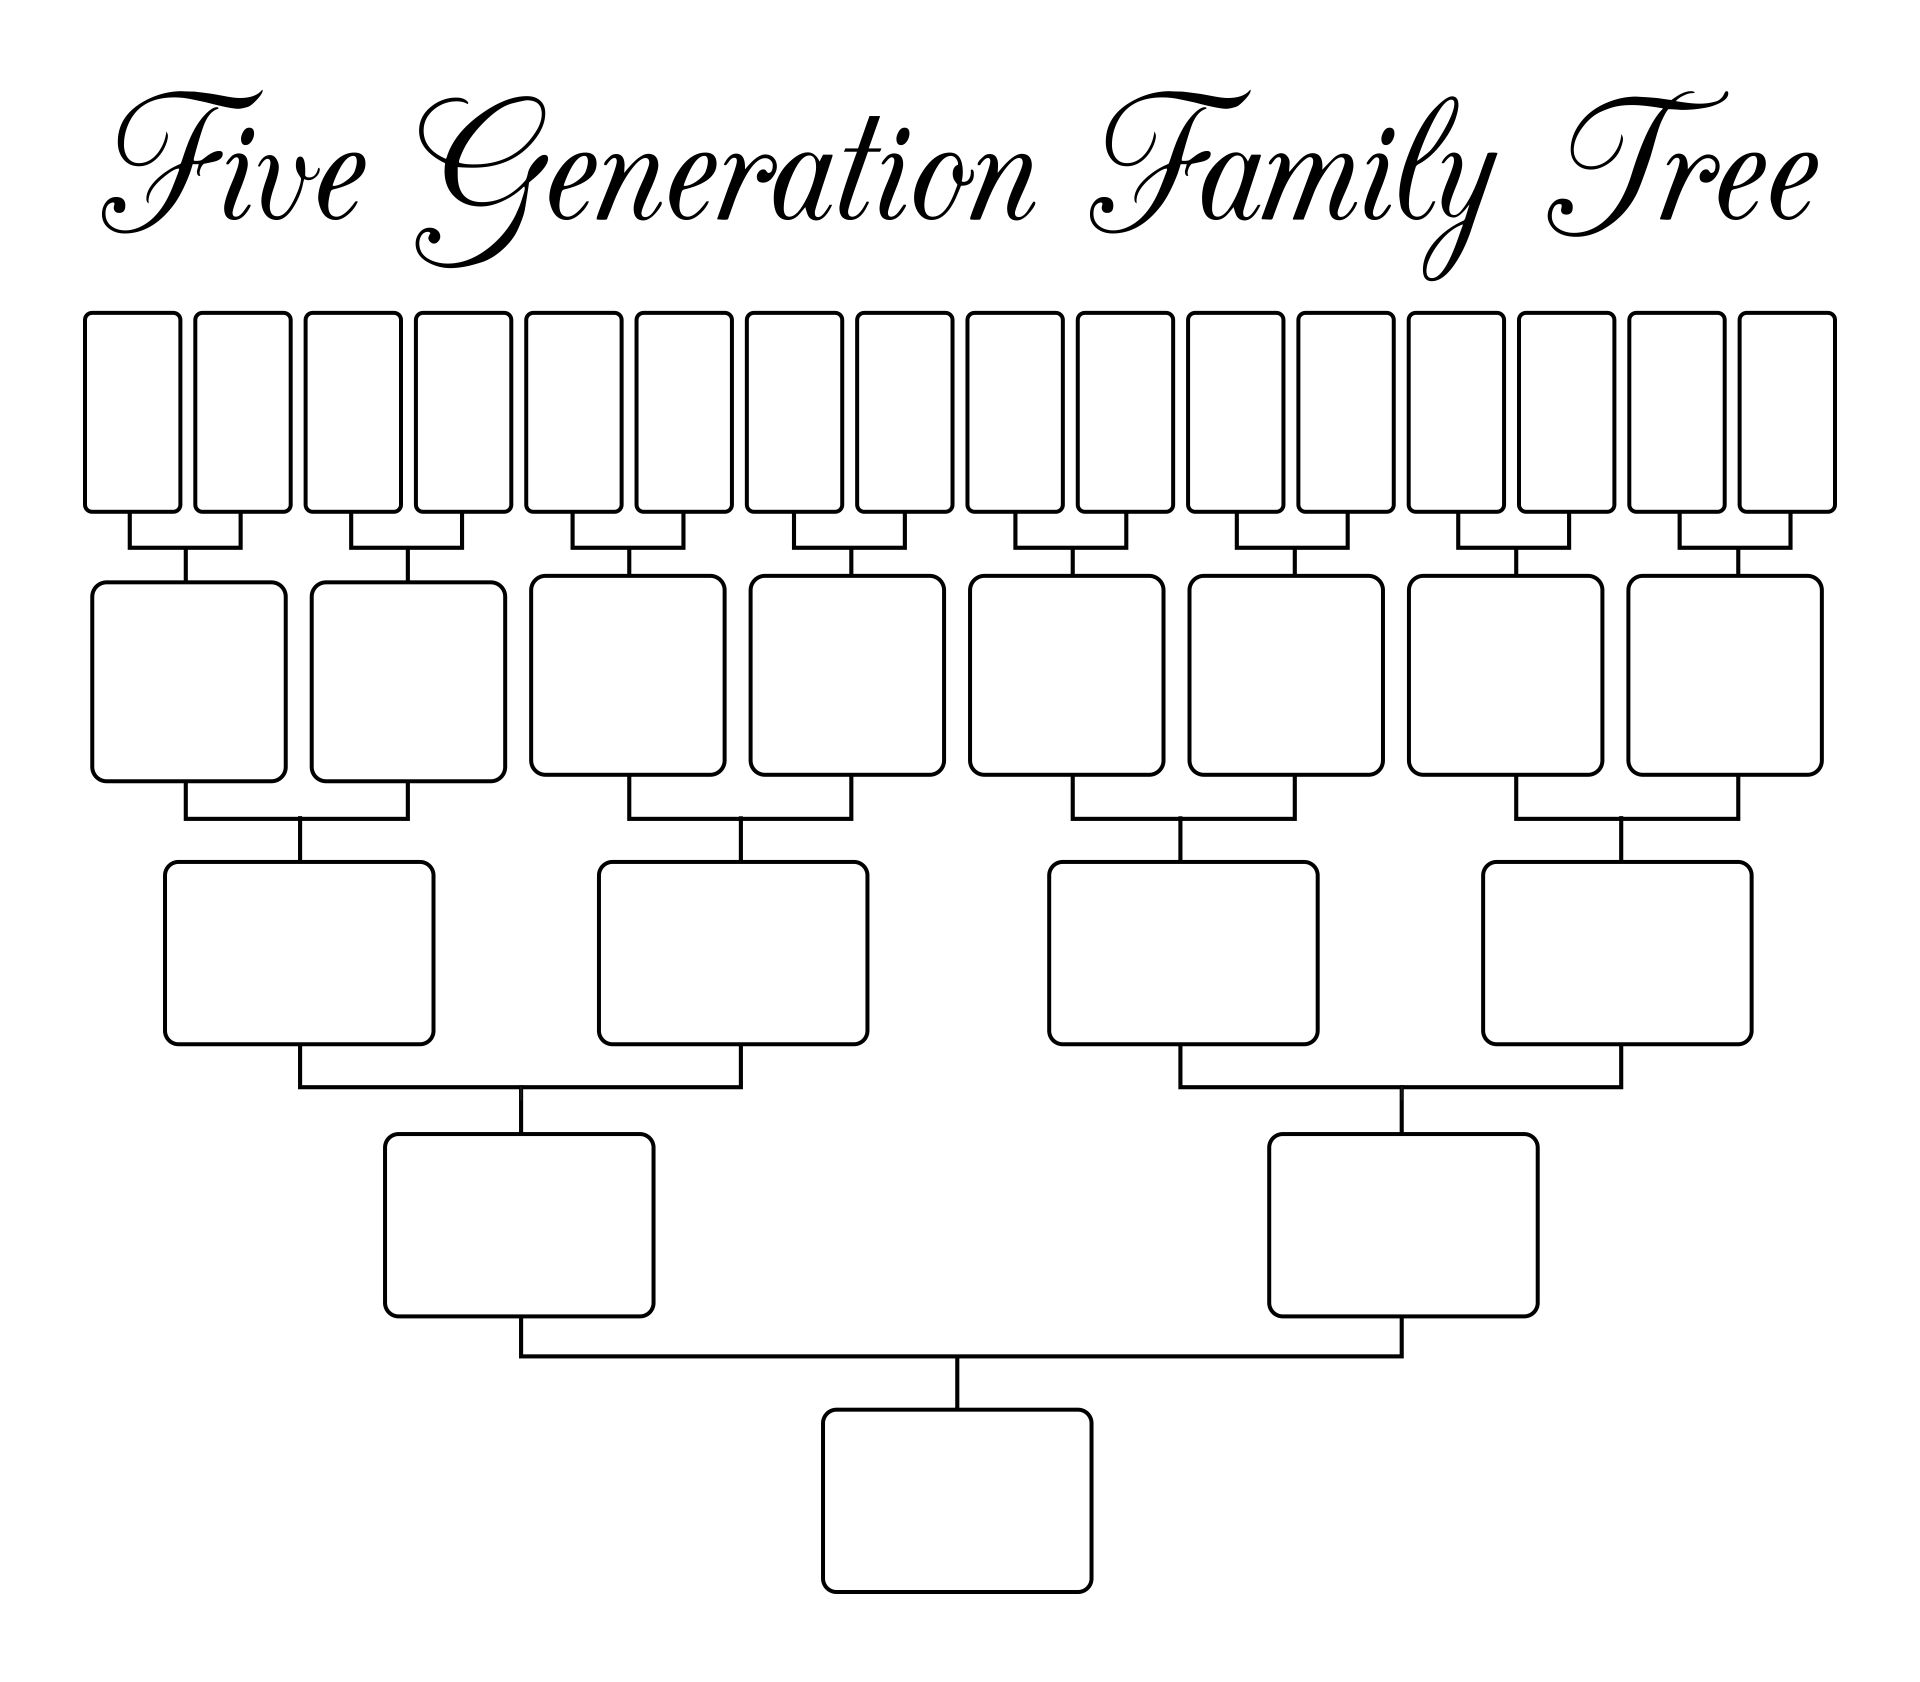 5 Generation Family Tree Templates